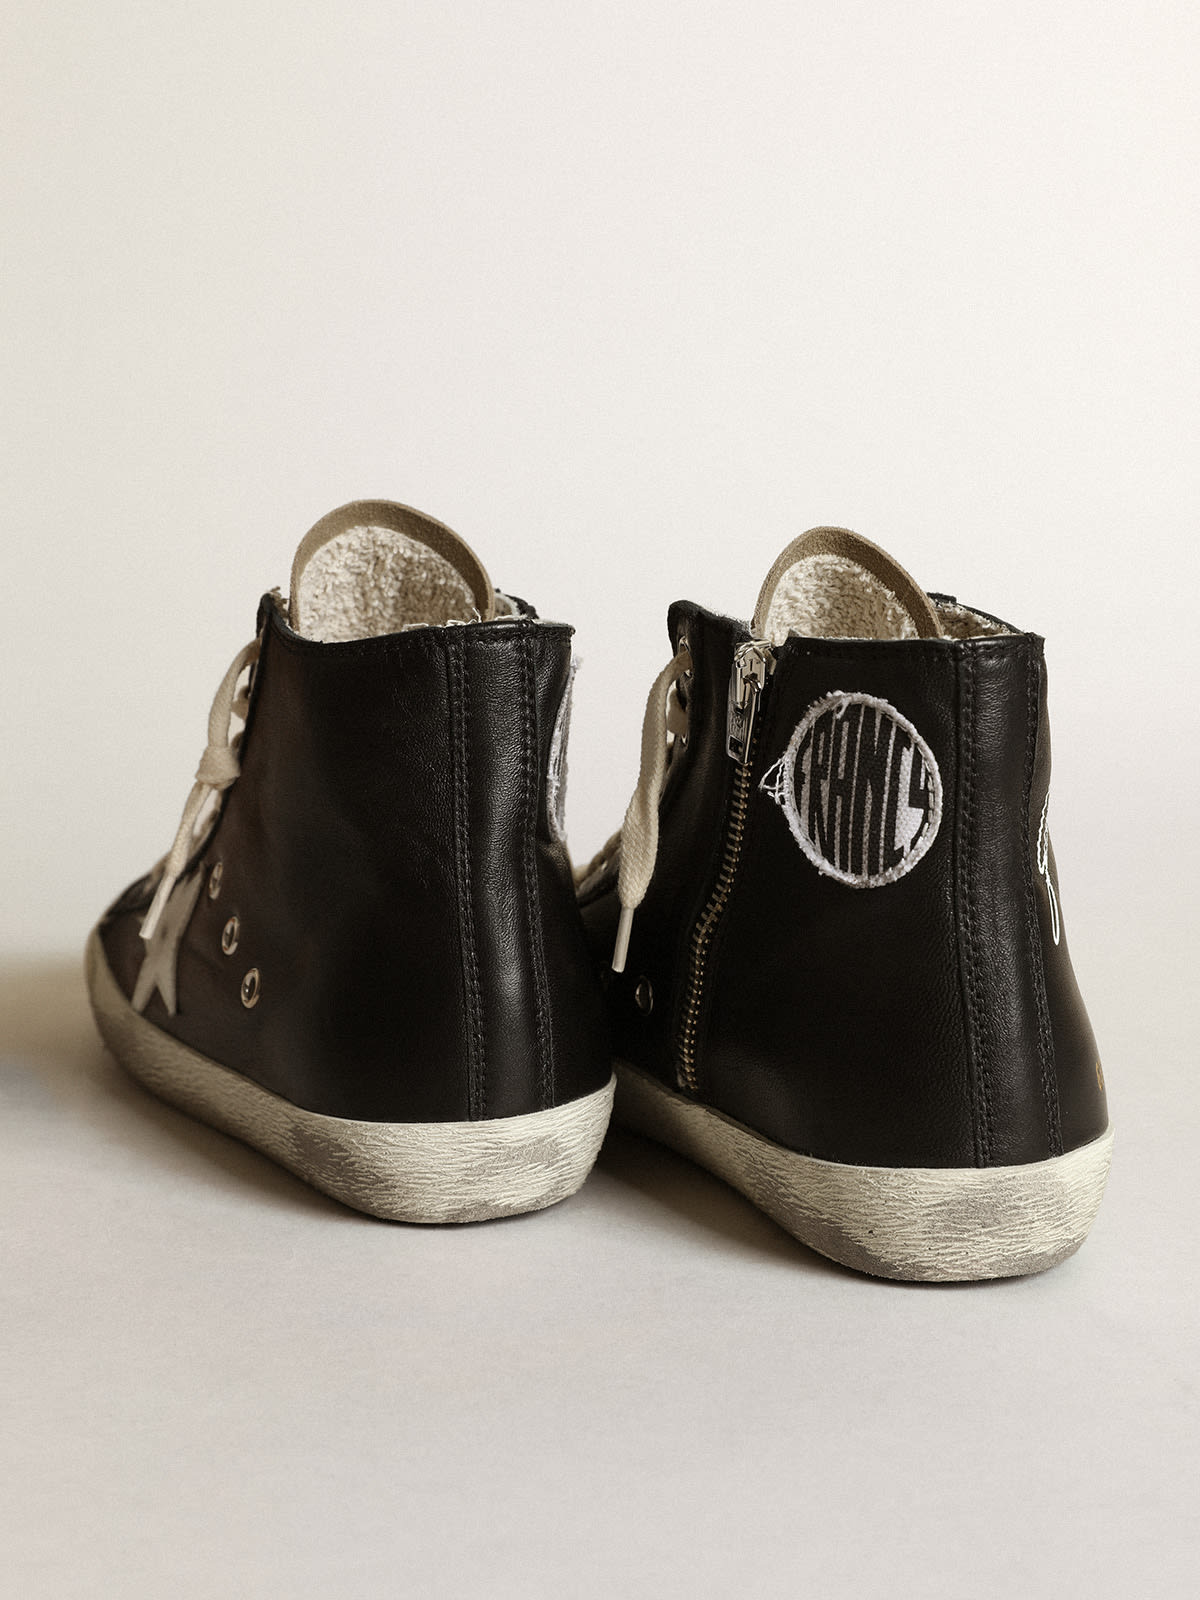 Golden Goose - Zapatillas deportivas Francy de napa negra con estrella de piel blanca y lengüeta de ante color gris paloma in 